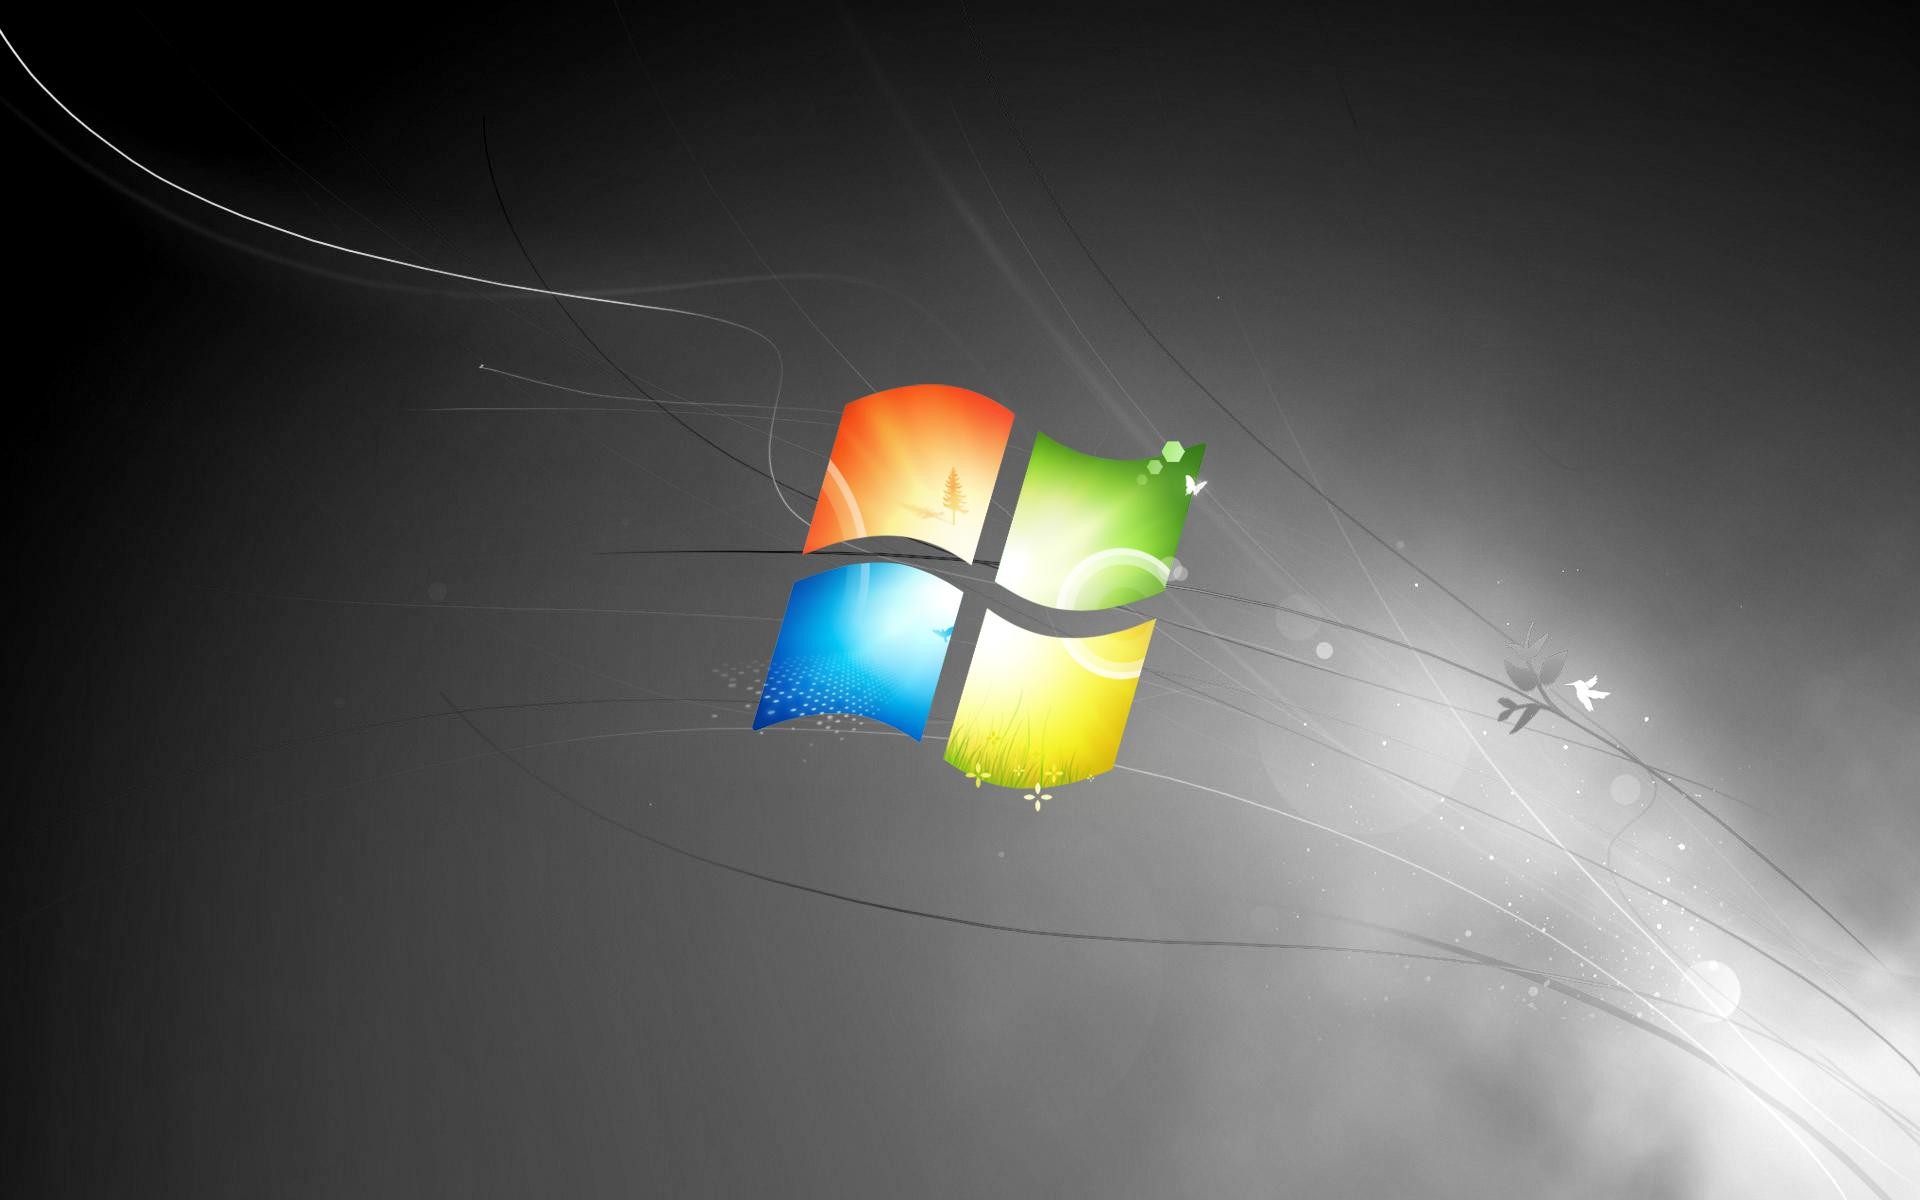 Hình nền đen là lựa chọn hoàn hảo cho những người yêu thích sự đơn giản và thanh lịch. Windows 7 cung cấp rất nhiều hình nền đen để lựa chọn, giúp bạn tùy chỉnh chiếc máy tính của mình theo phong cách cá nhân. Đừng bỏ lỡ cơ hội để khám phá những hình ảnh đẹp liên quan tới chủ đề này.